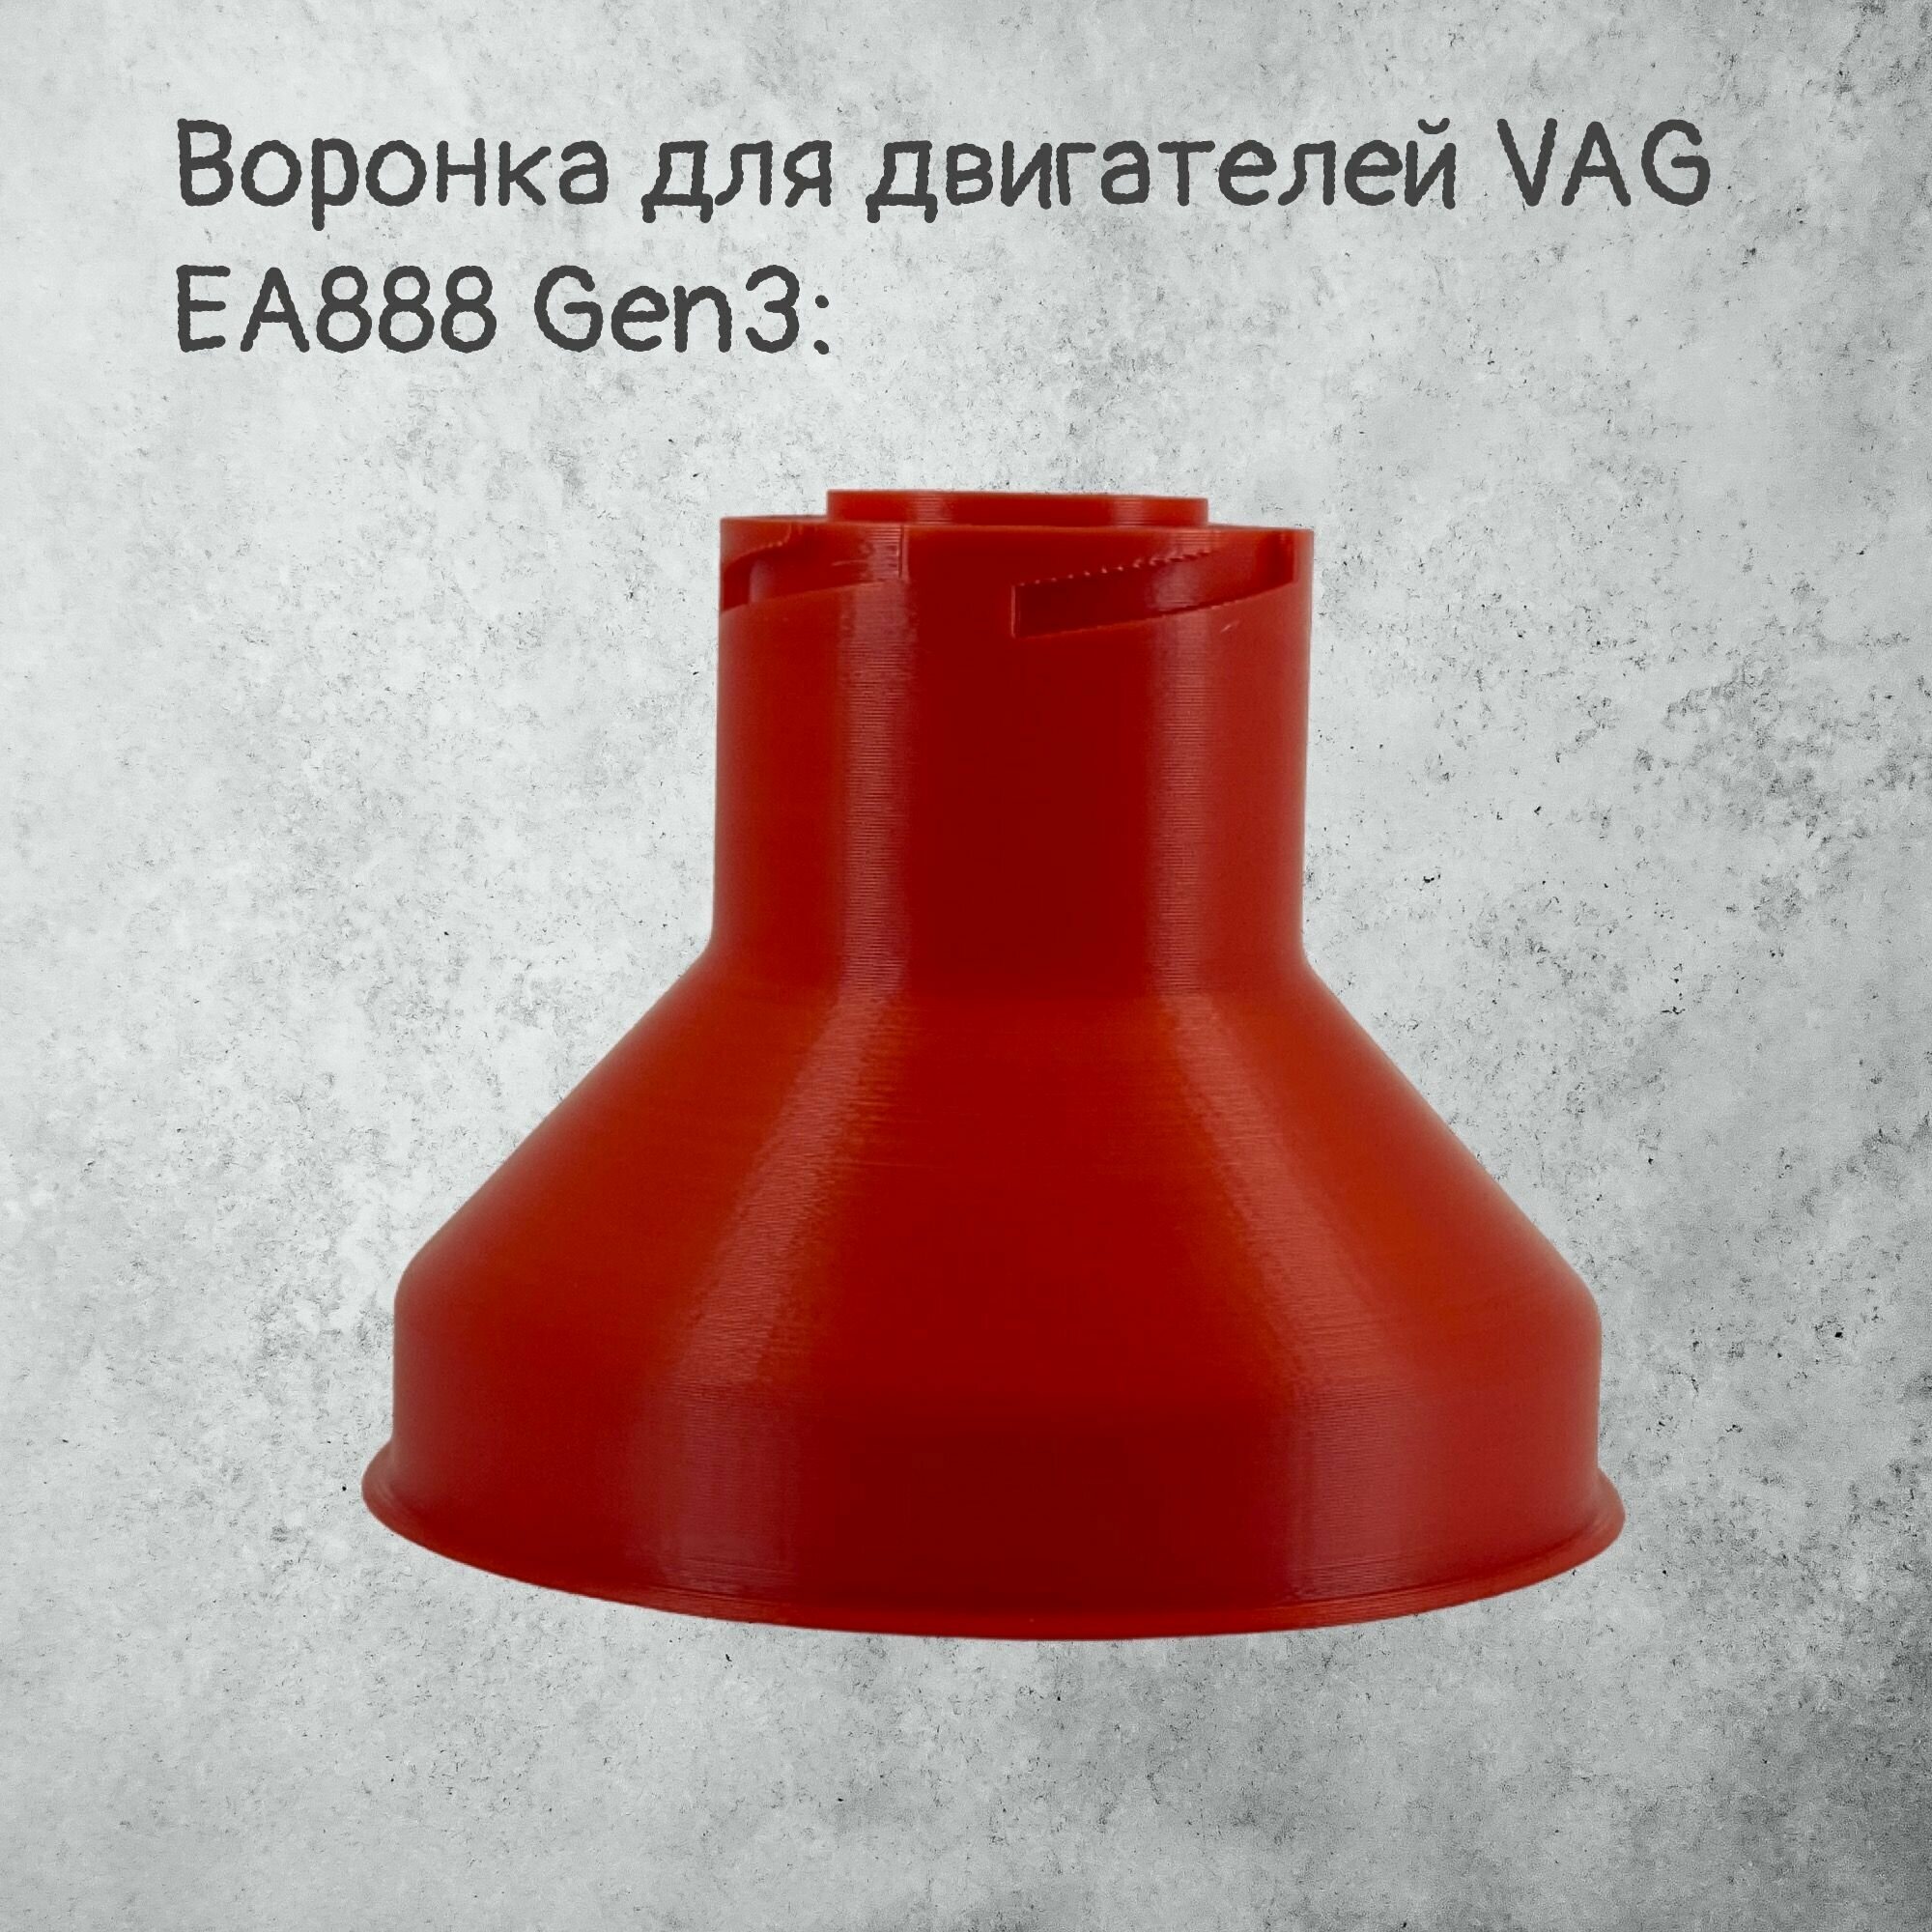 Воронка маслозаливная для VAG EA888 Gen3 Красная